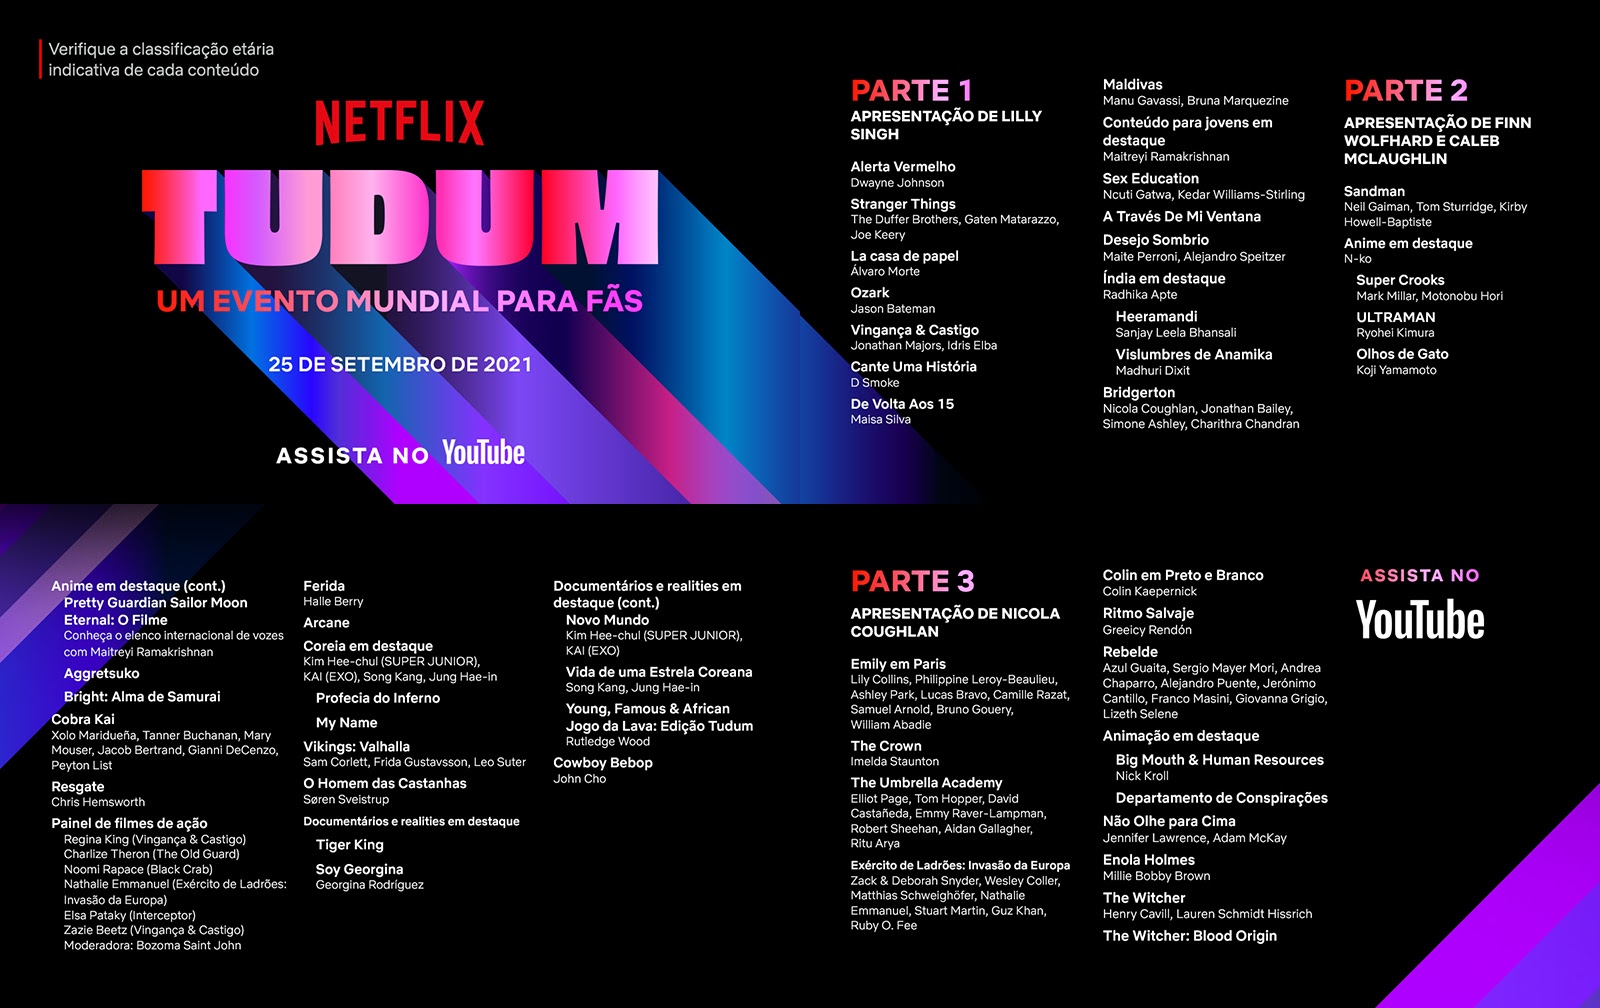 Confira a programação completa do Tudum Mundial da Netflix